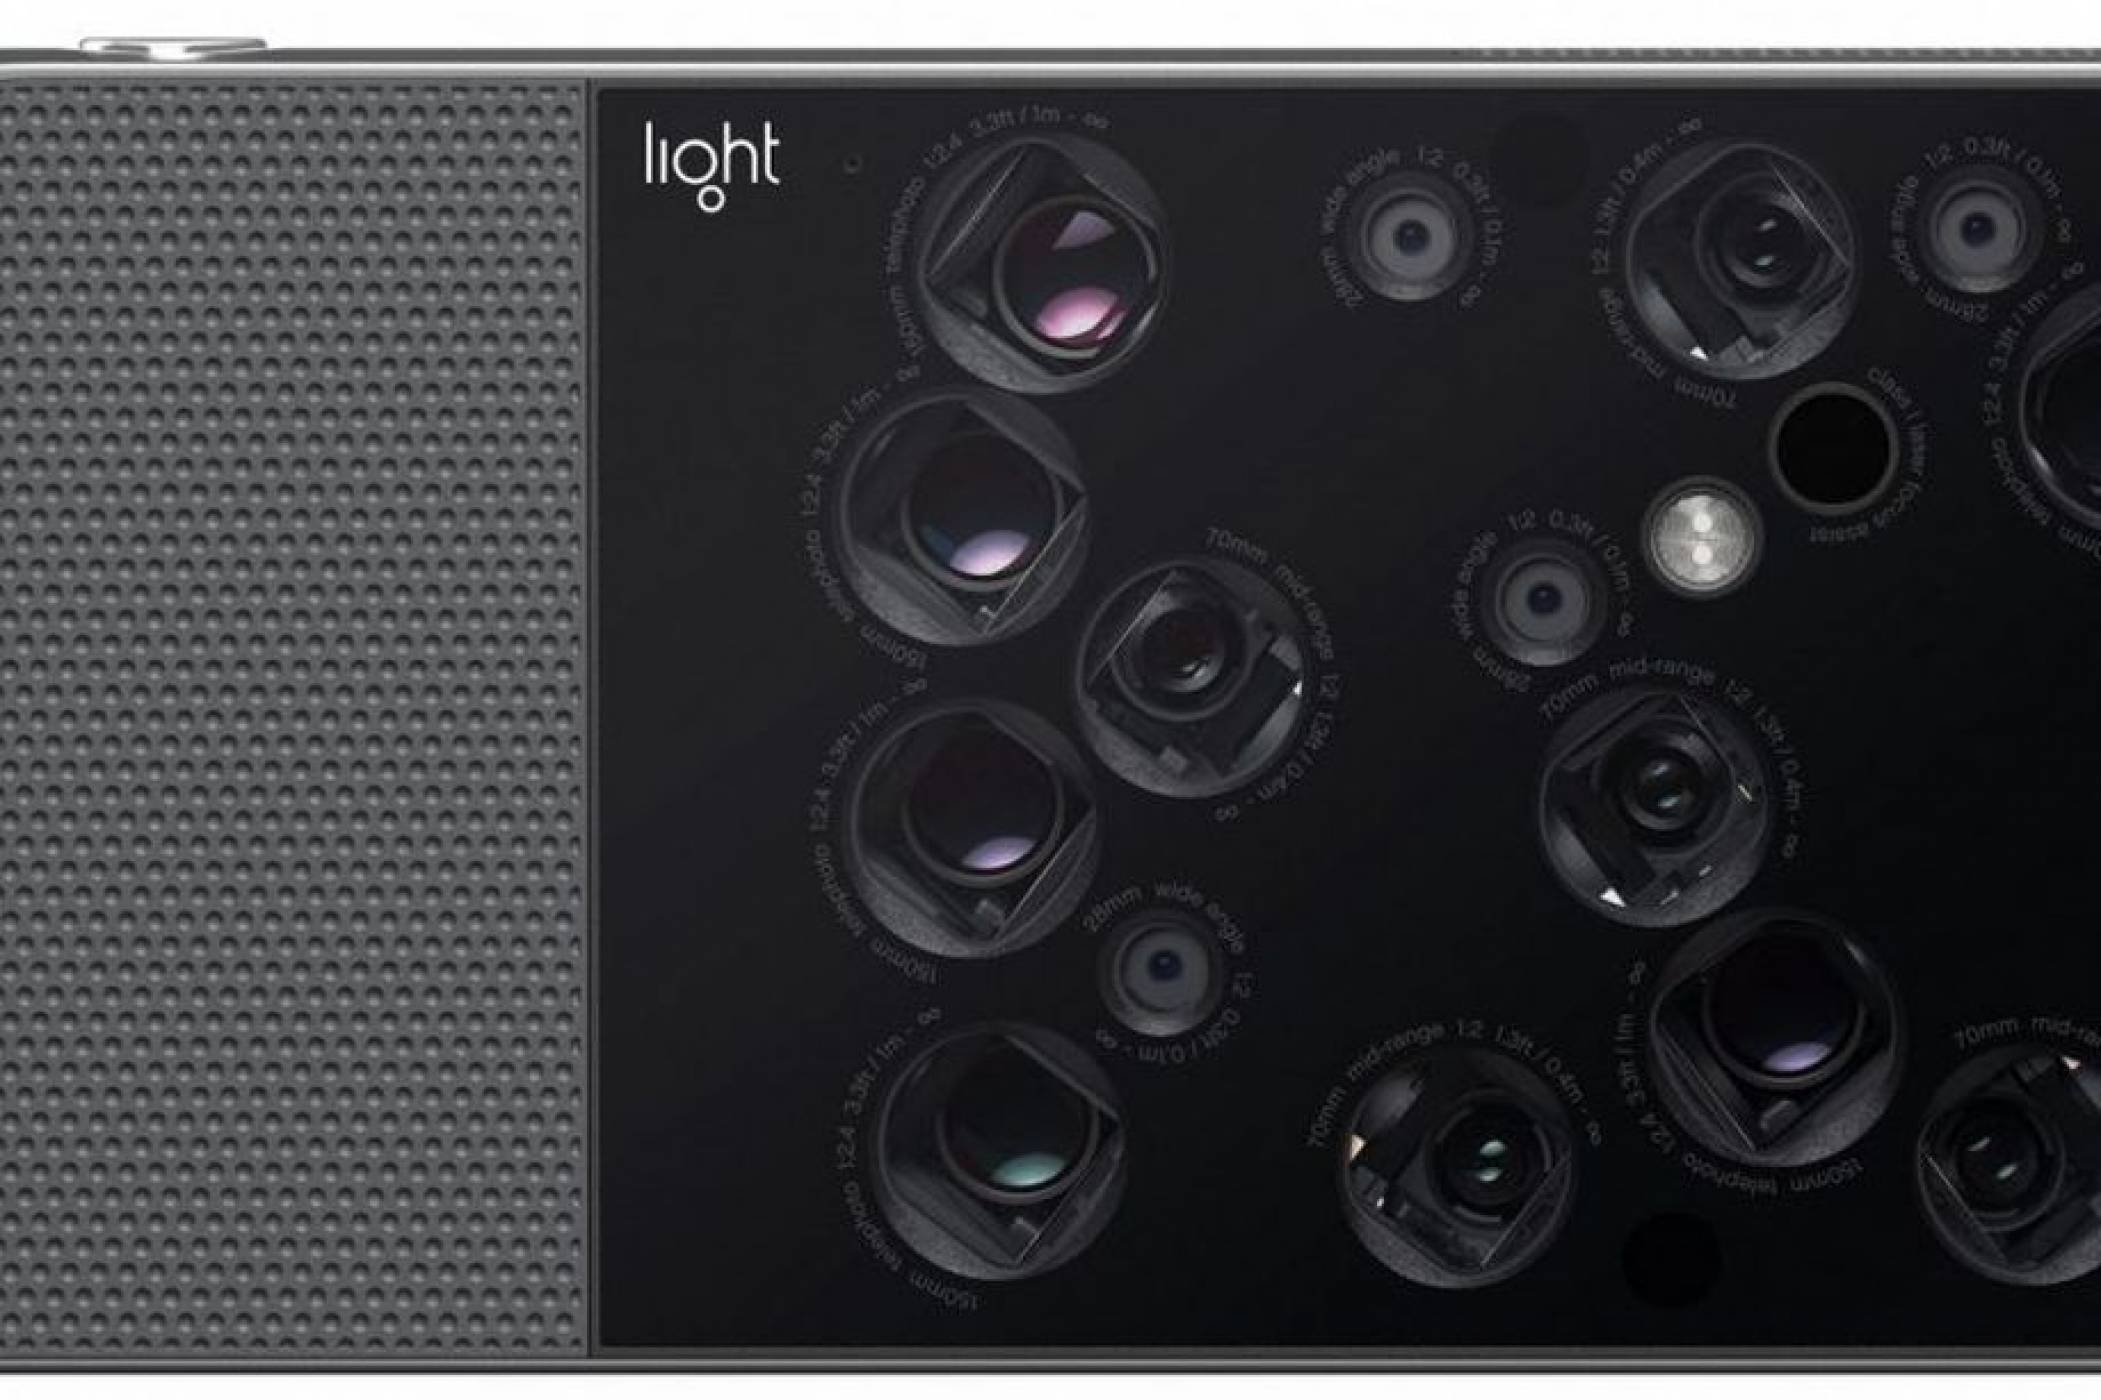 Ето как как изглежда фотоапаратът с 16 лещи на Light